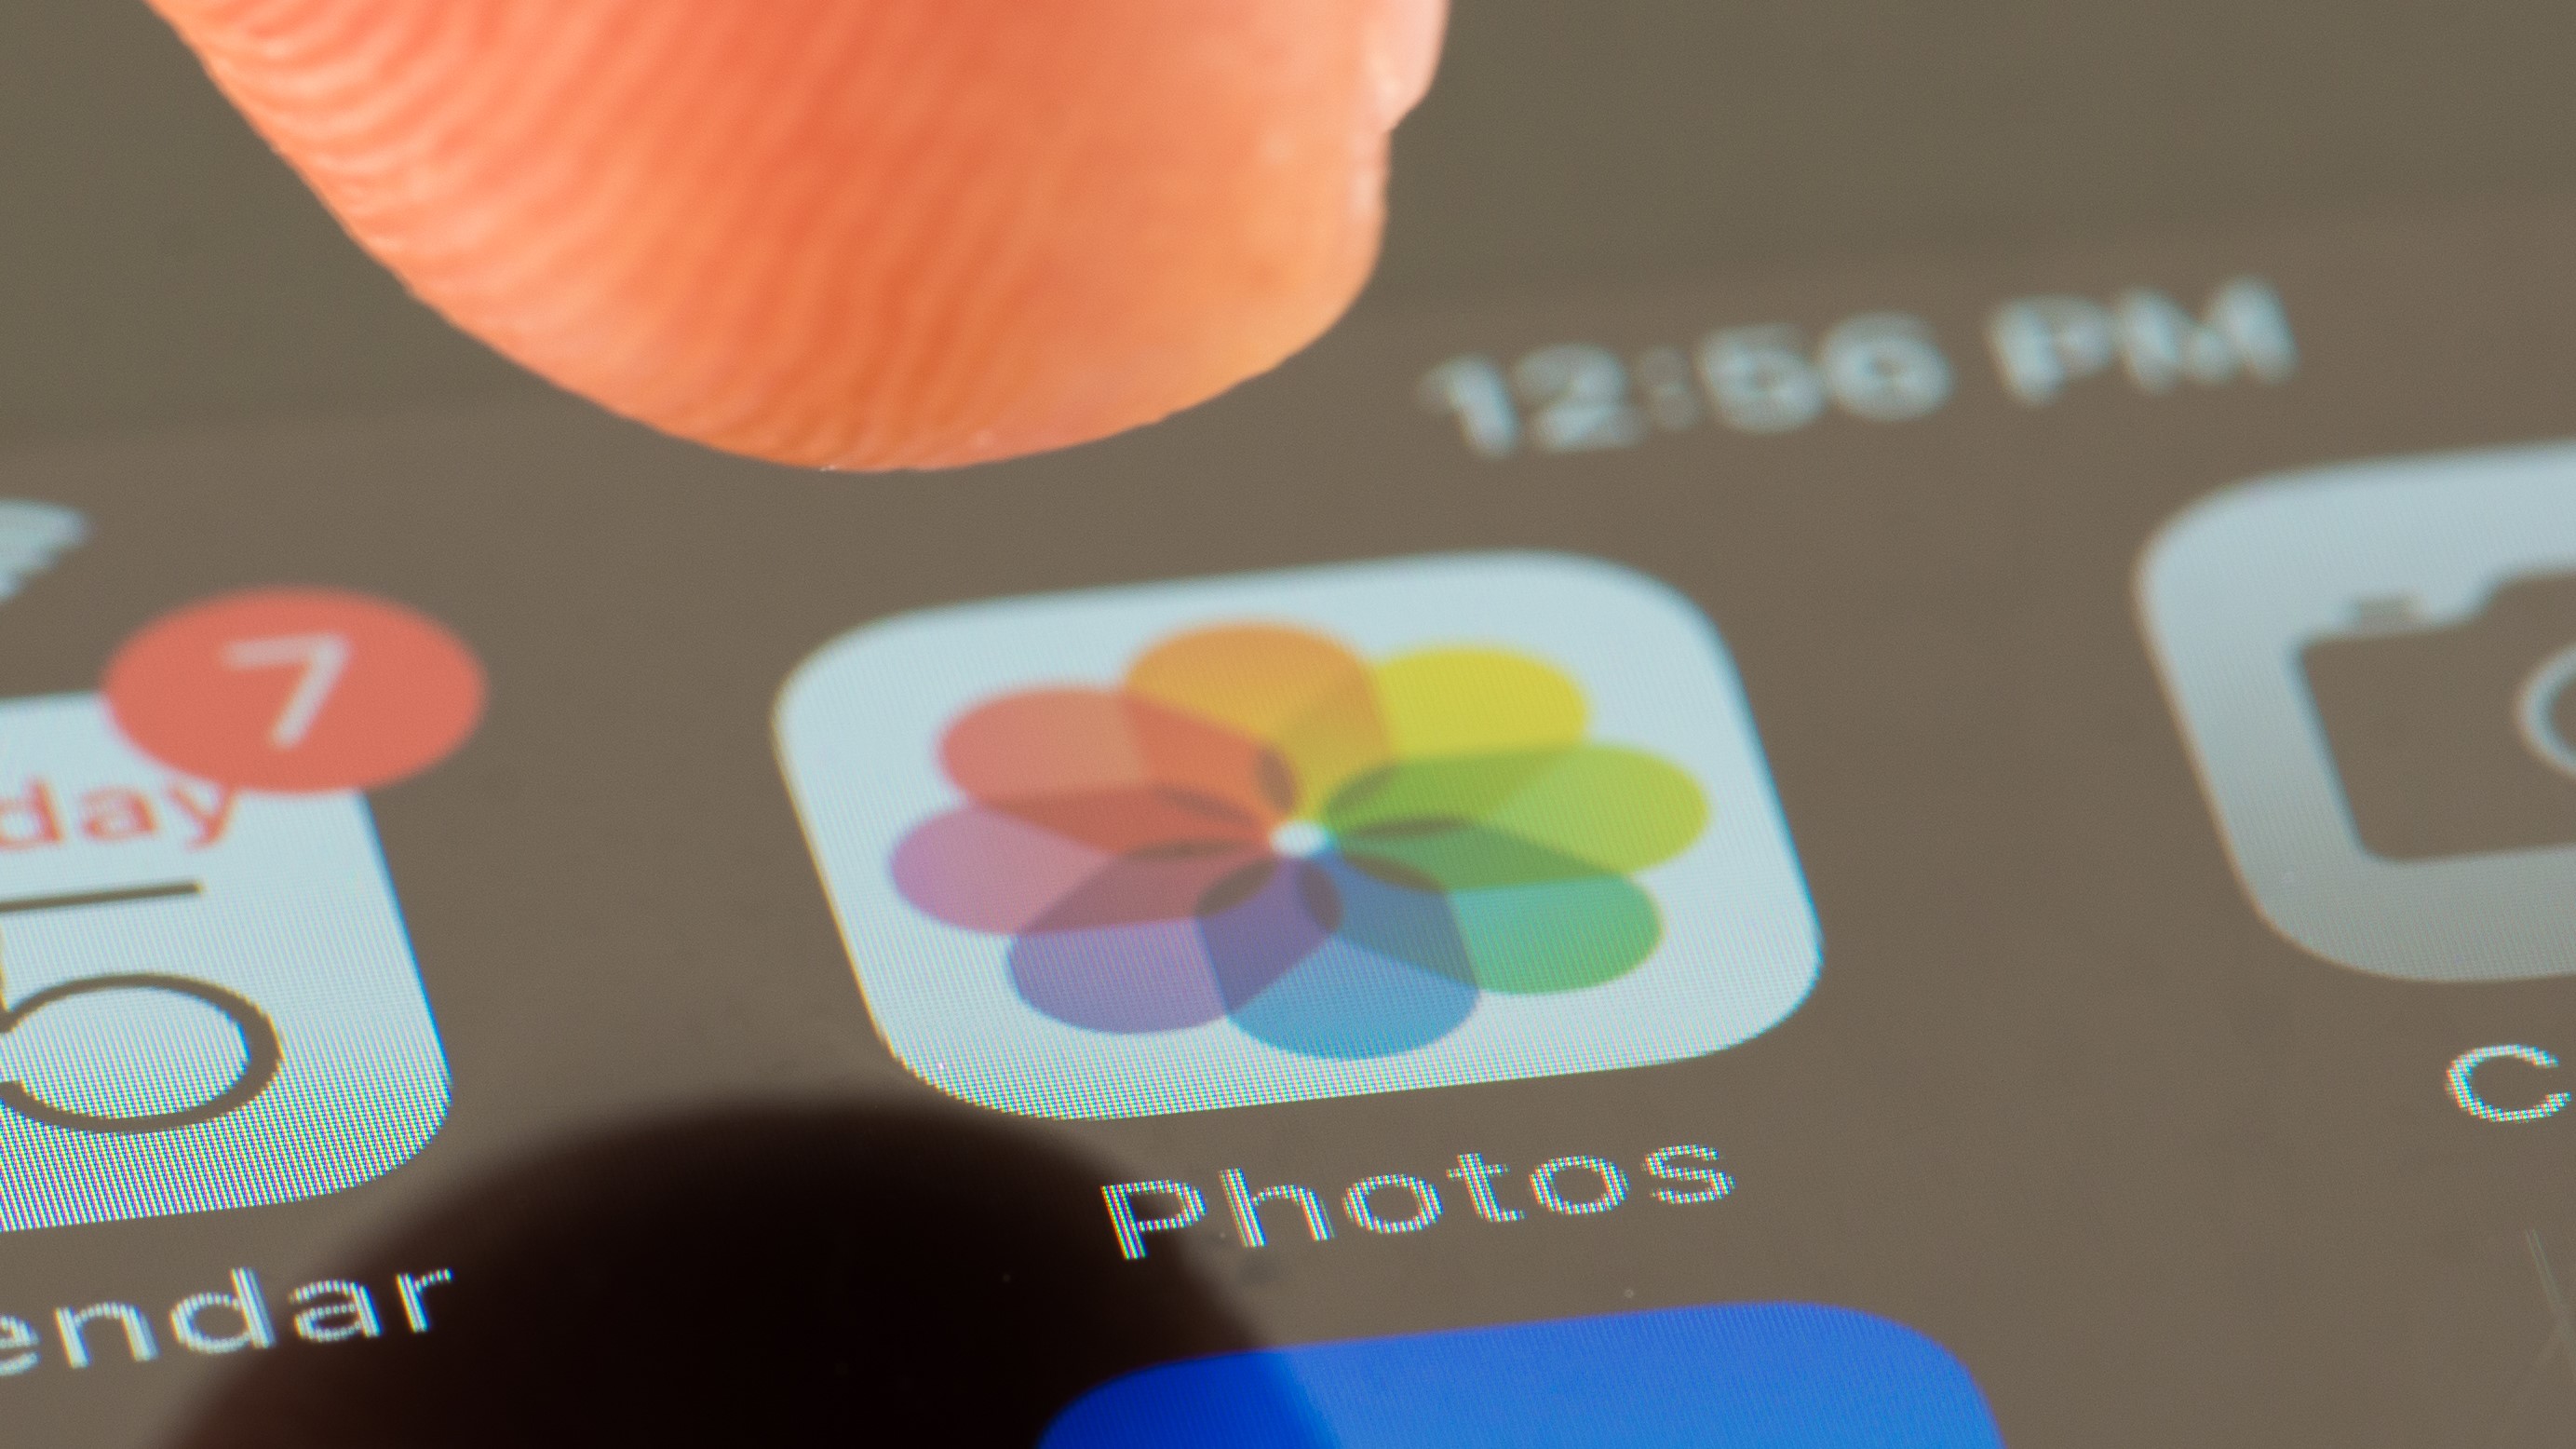 Un dedo se levanta para tocar el ícono de la aplicación Fotos en un iPhone